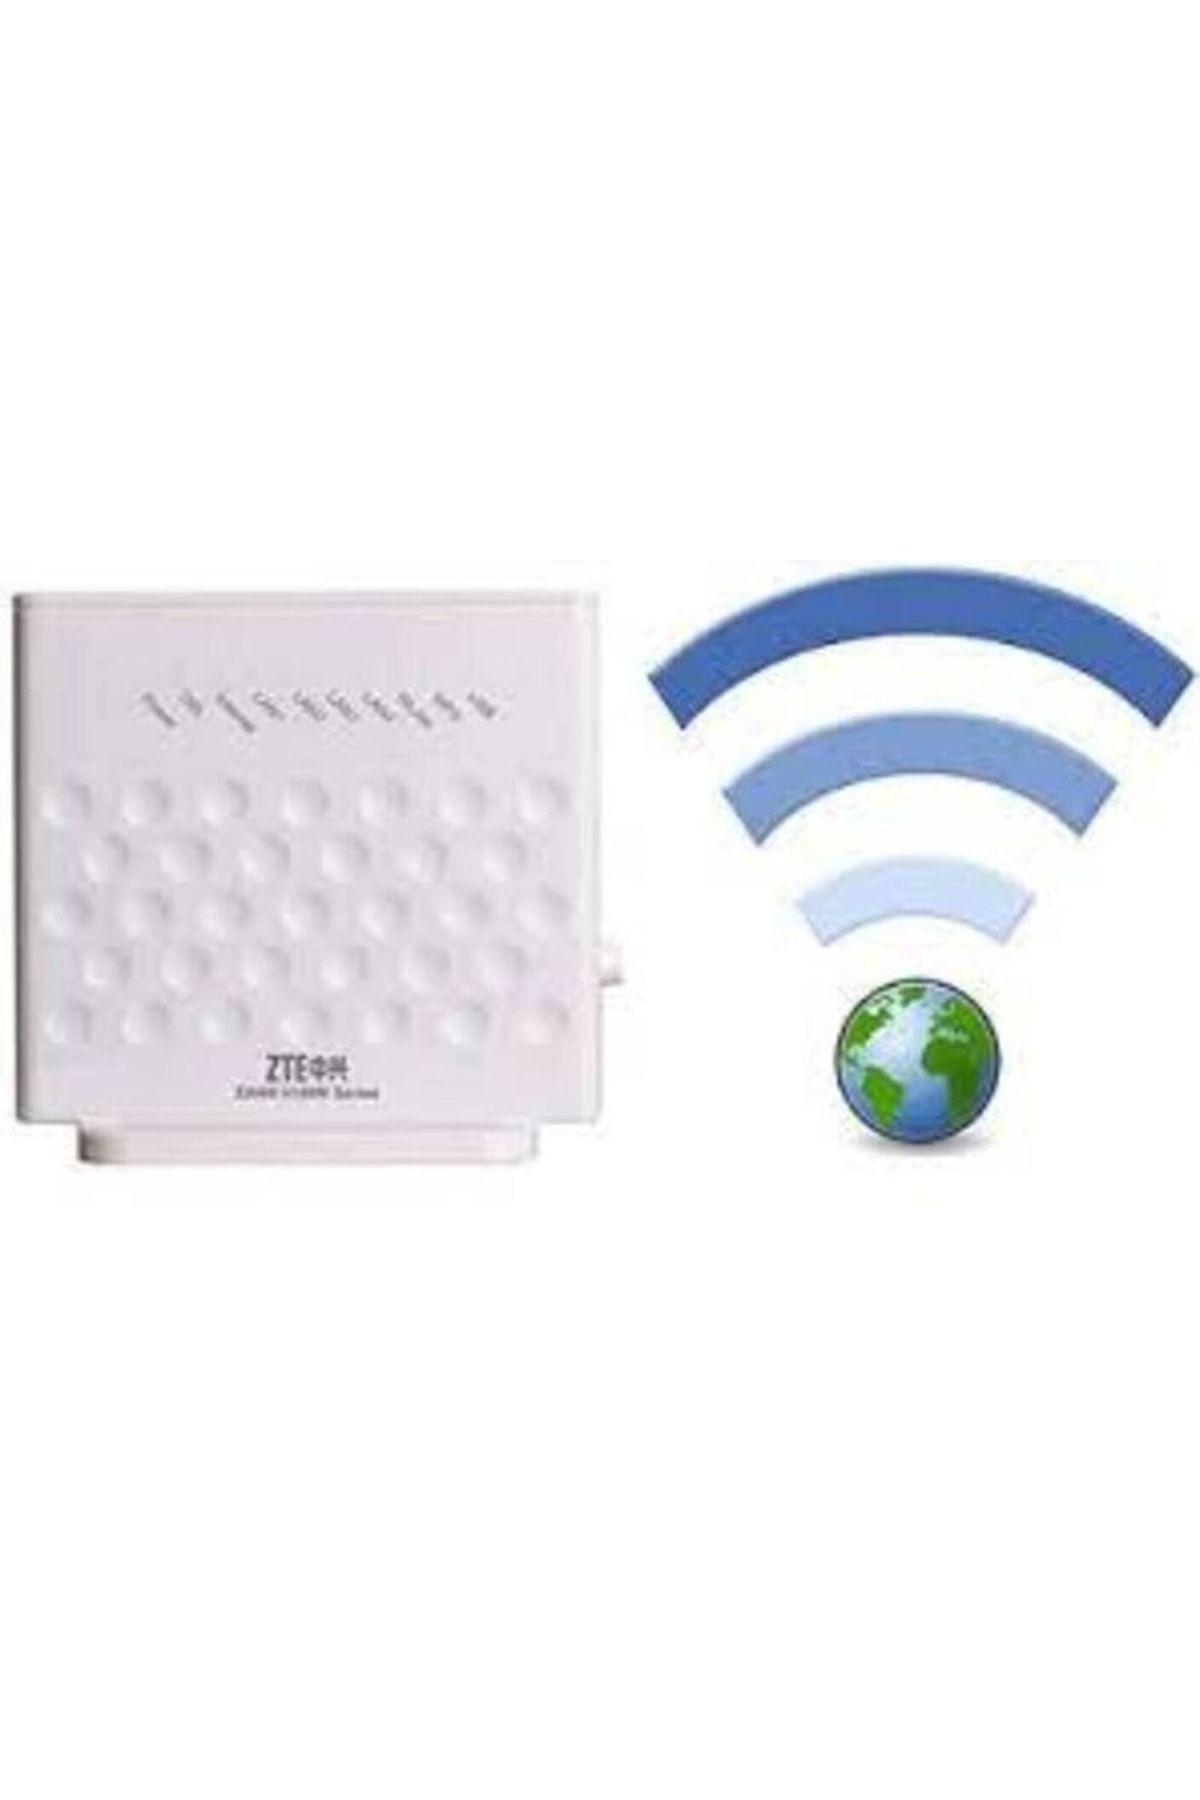 ZTE H108n, Usb Fast Ethernet, 4 Port 300 Mbps Adsl-2 Kablosuz Wifi Modem Router